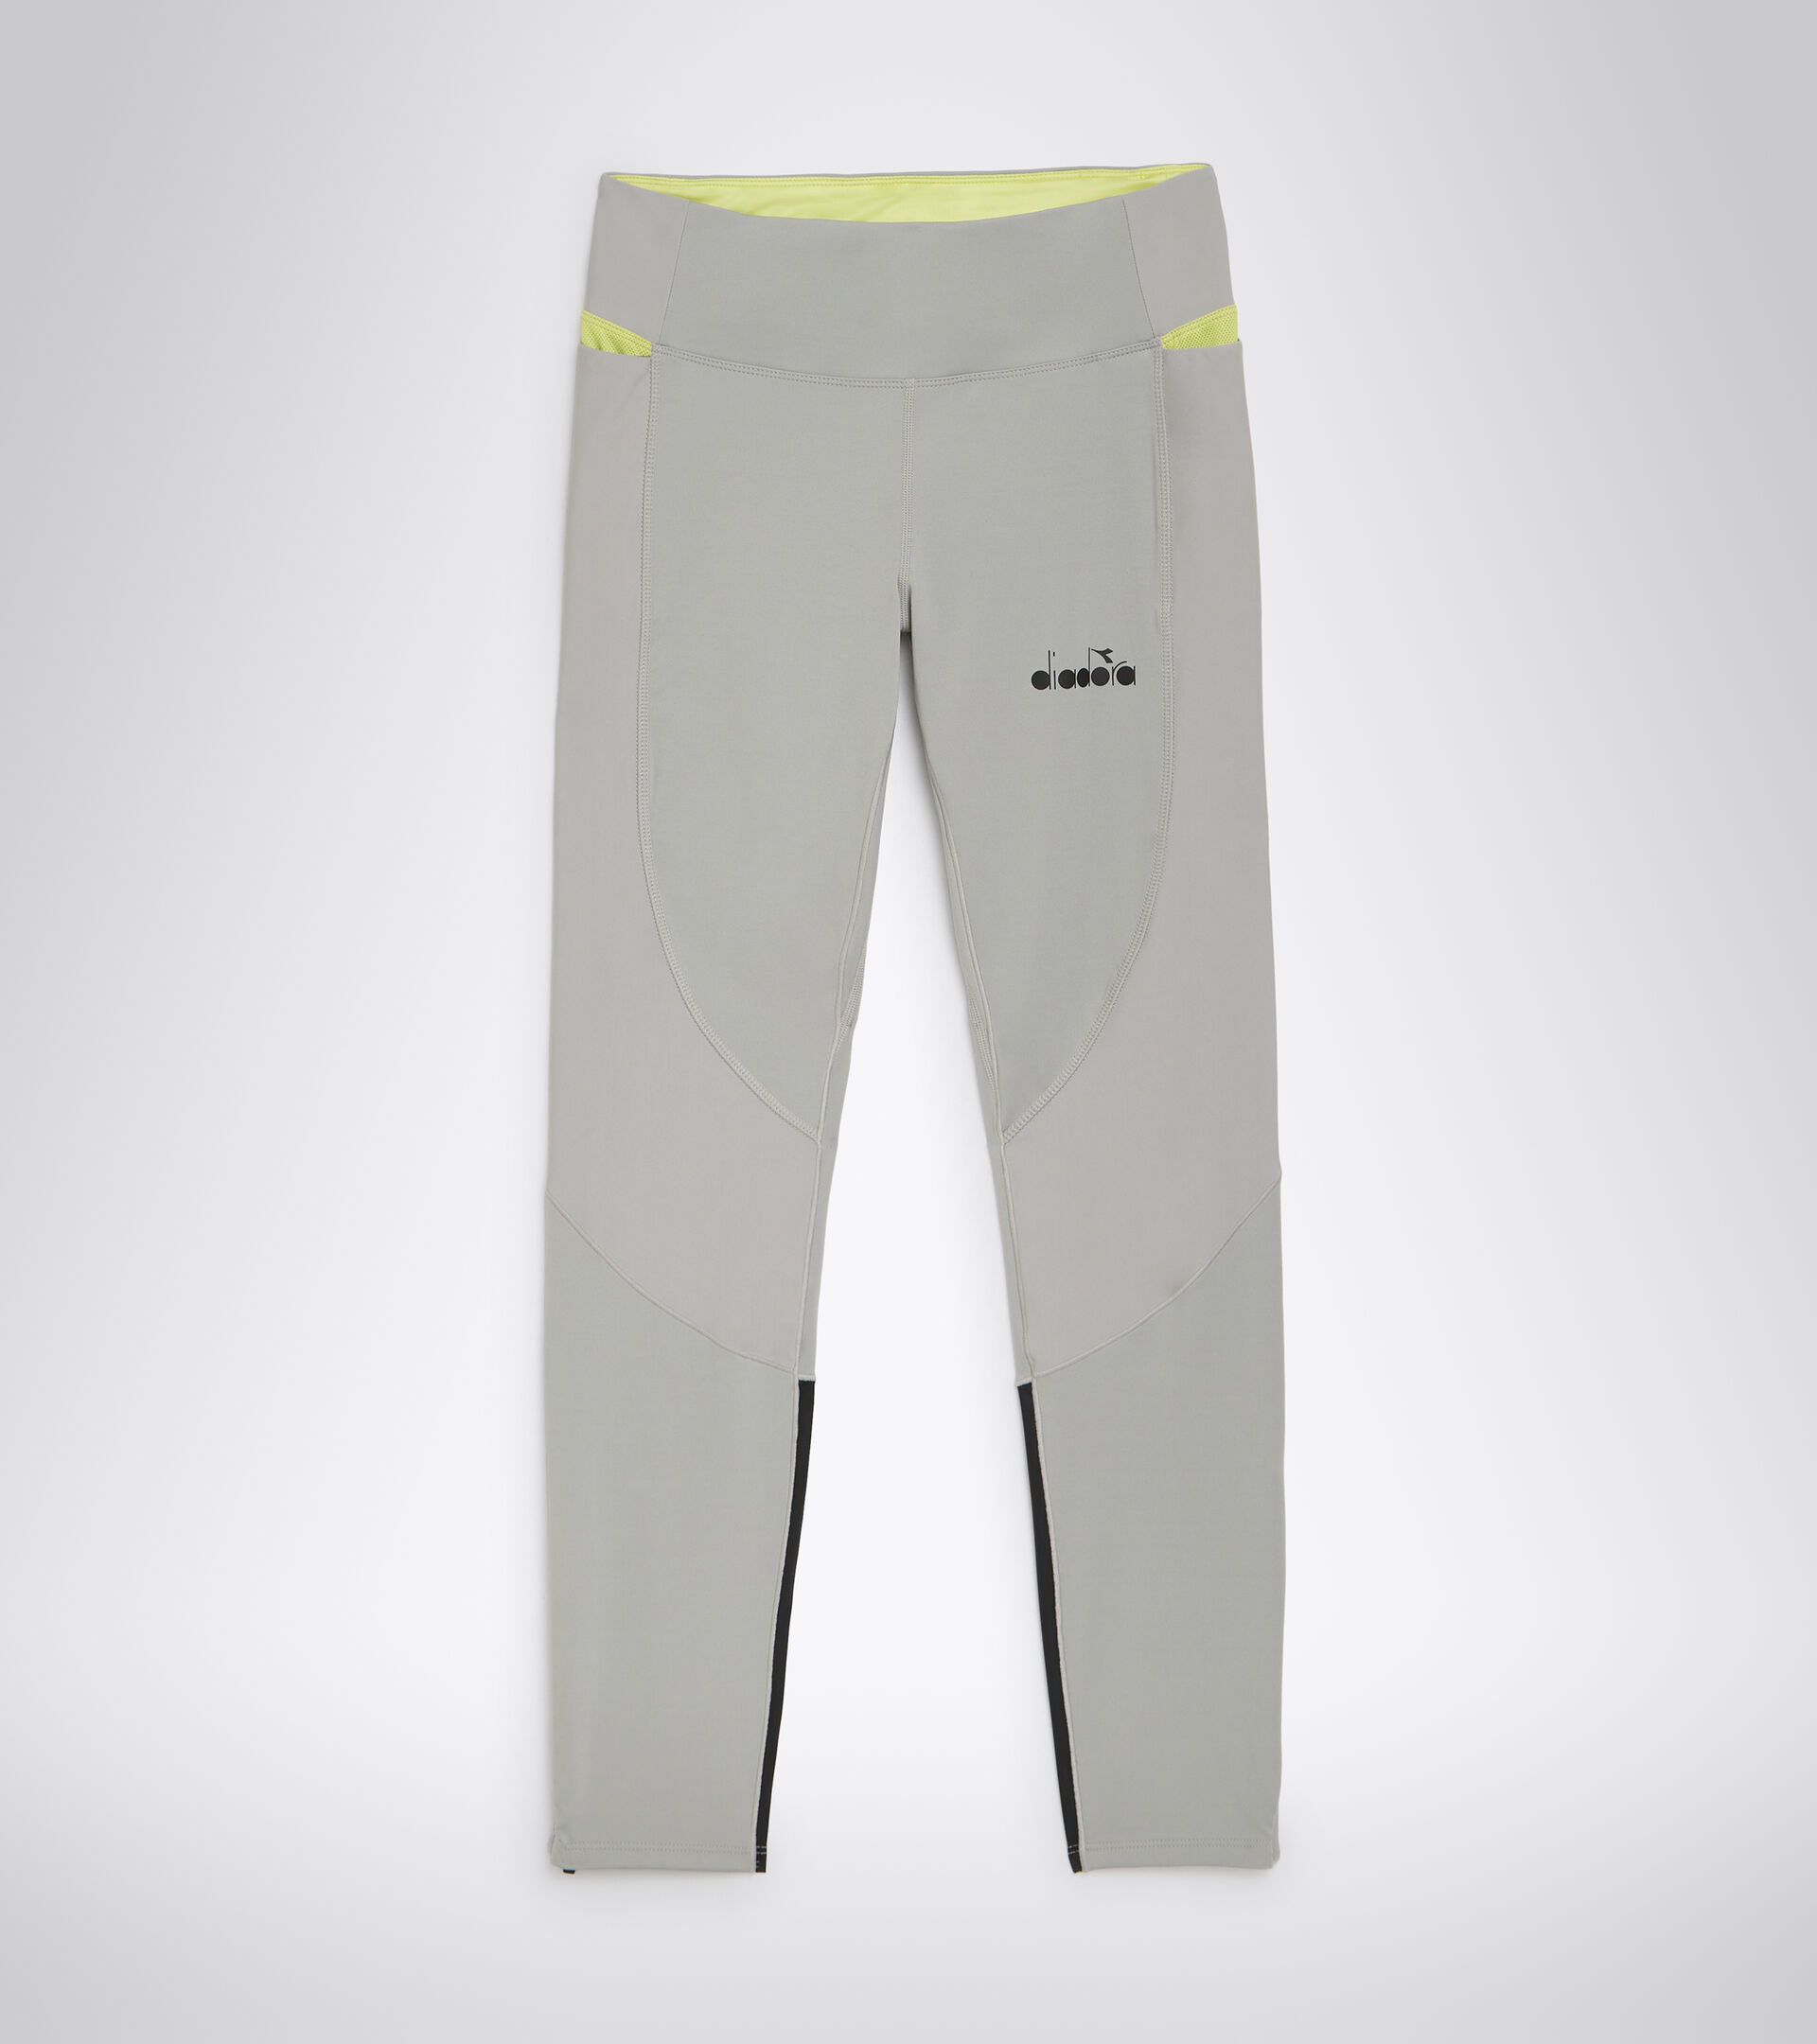 WINTER RUNNING TIGHTS BE ONE Running leggings - Men - Diadora Online Store  CA